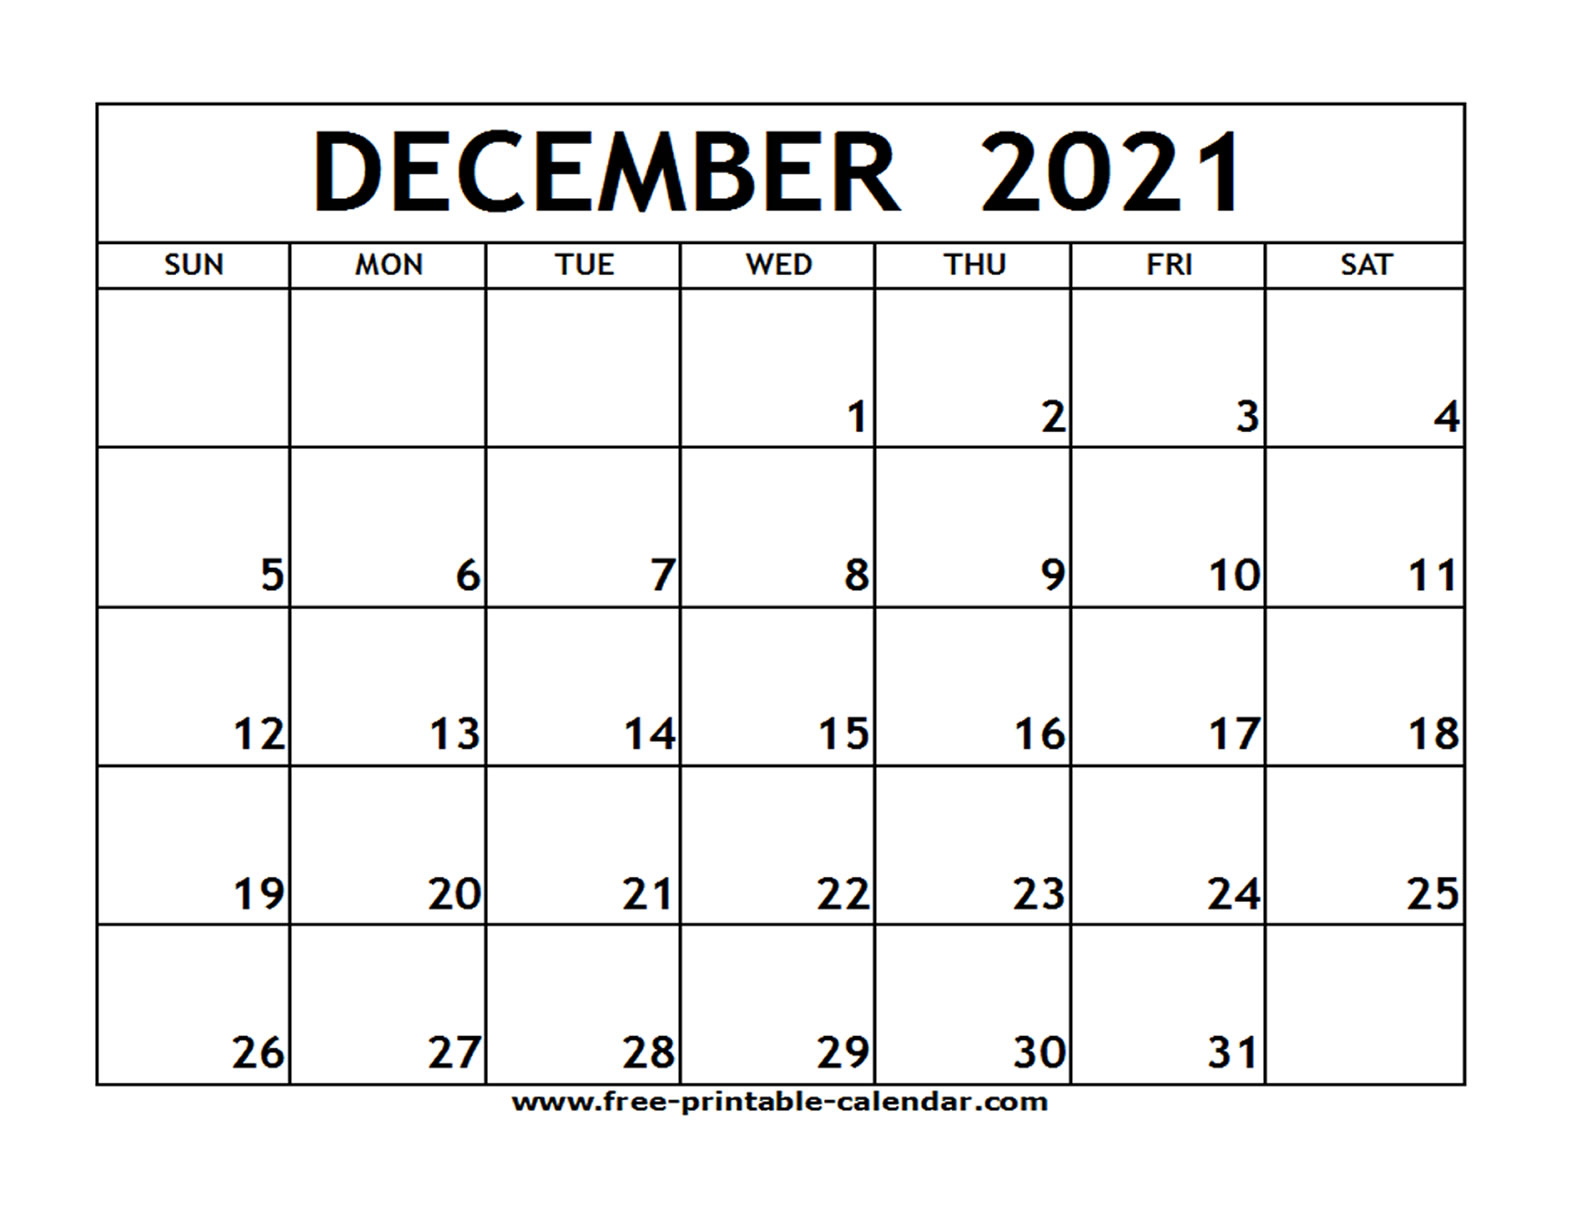 December 2021 Calendar Printable Example Calendar Printable